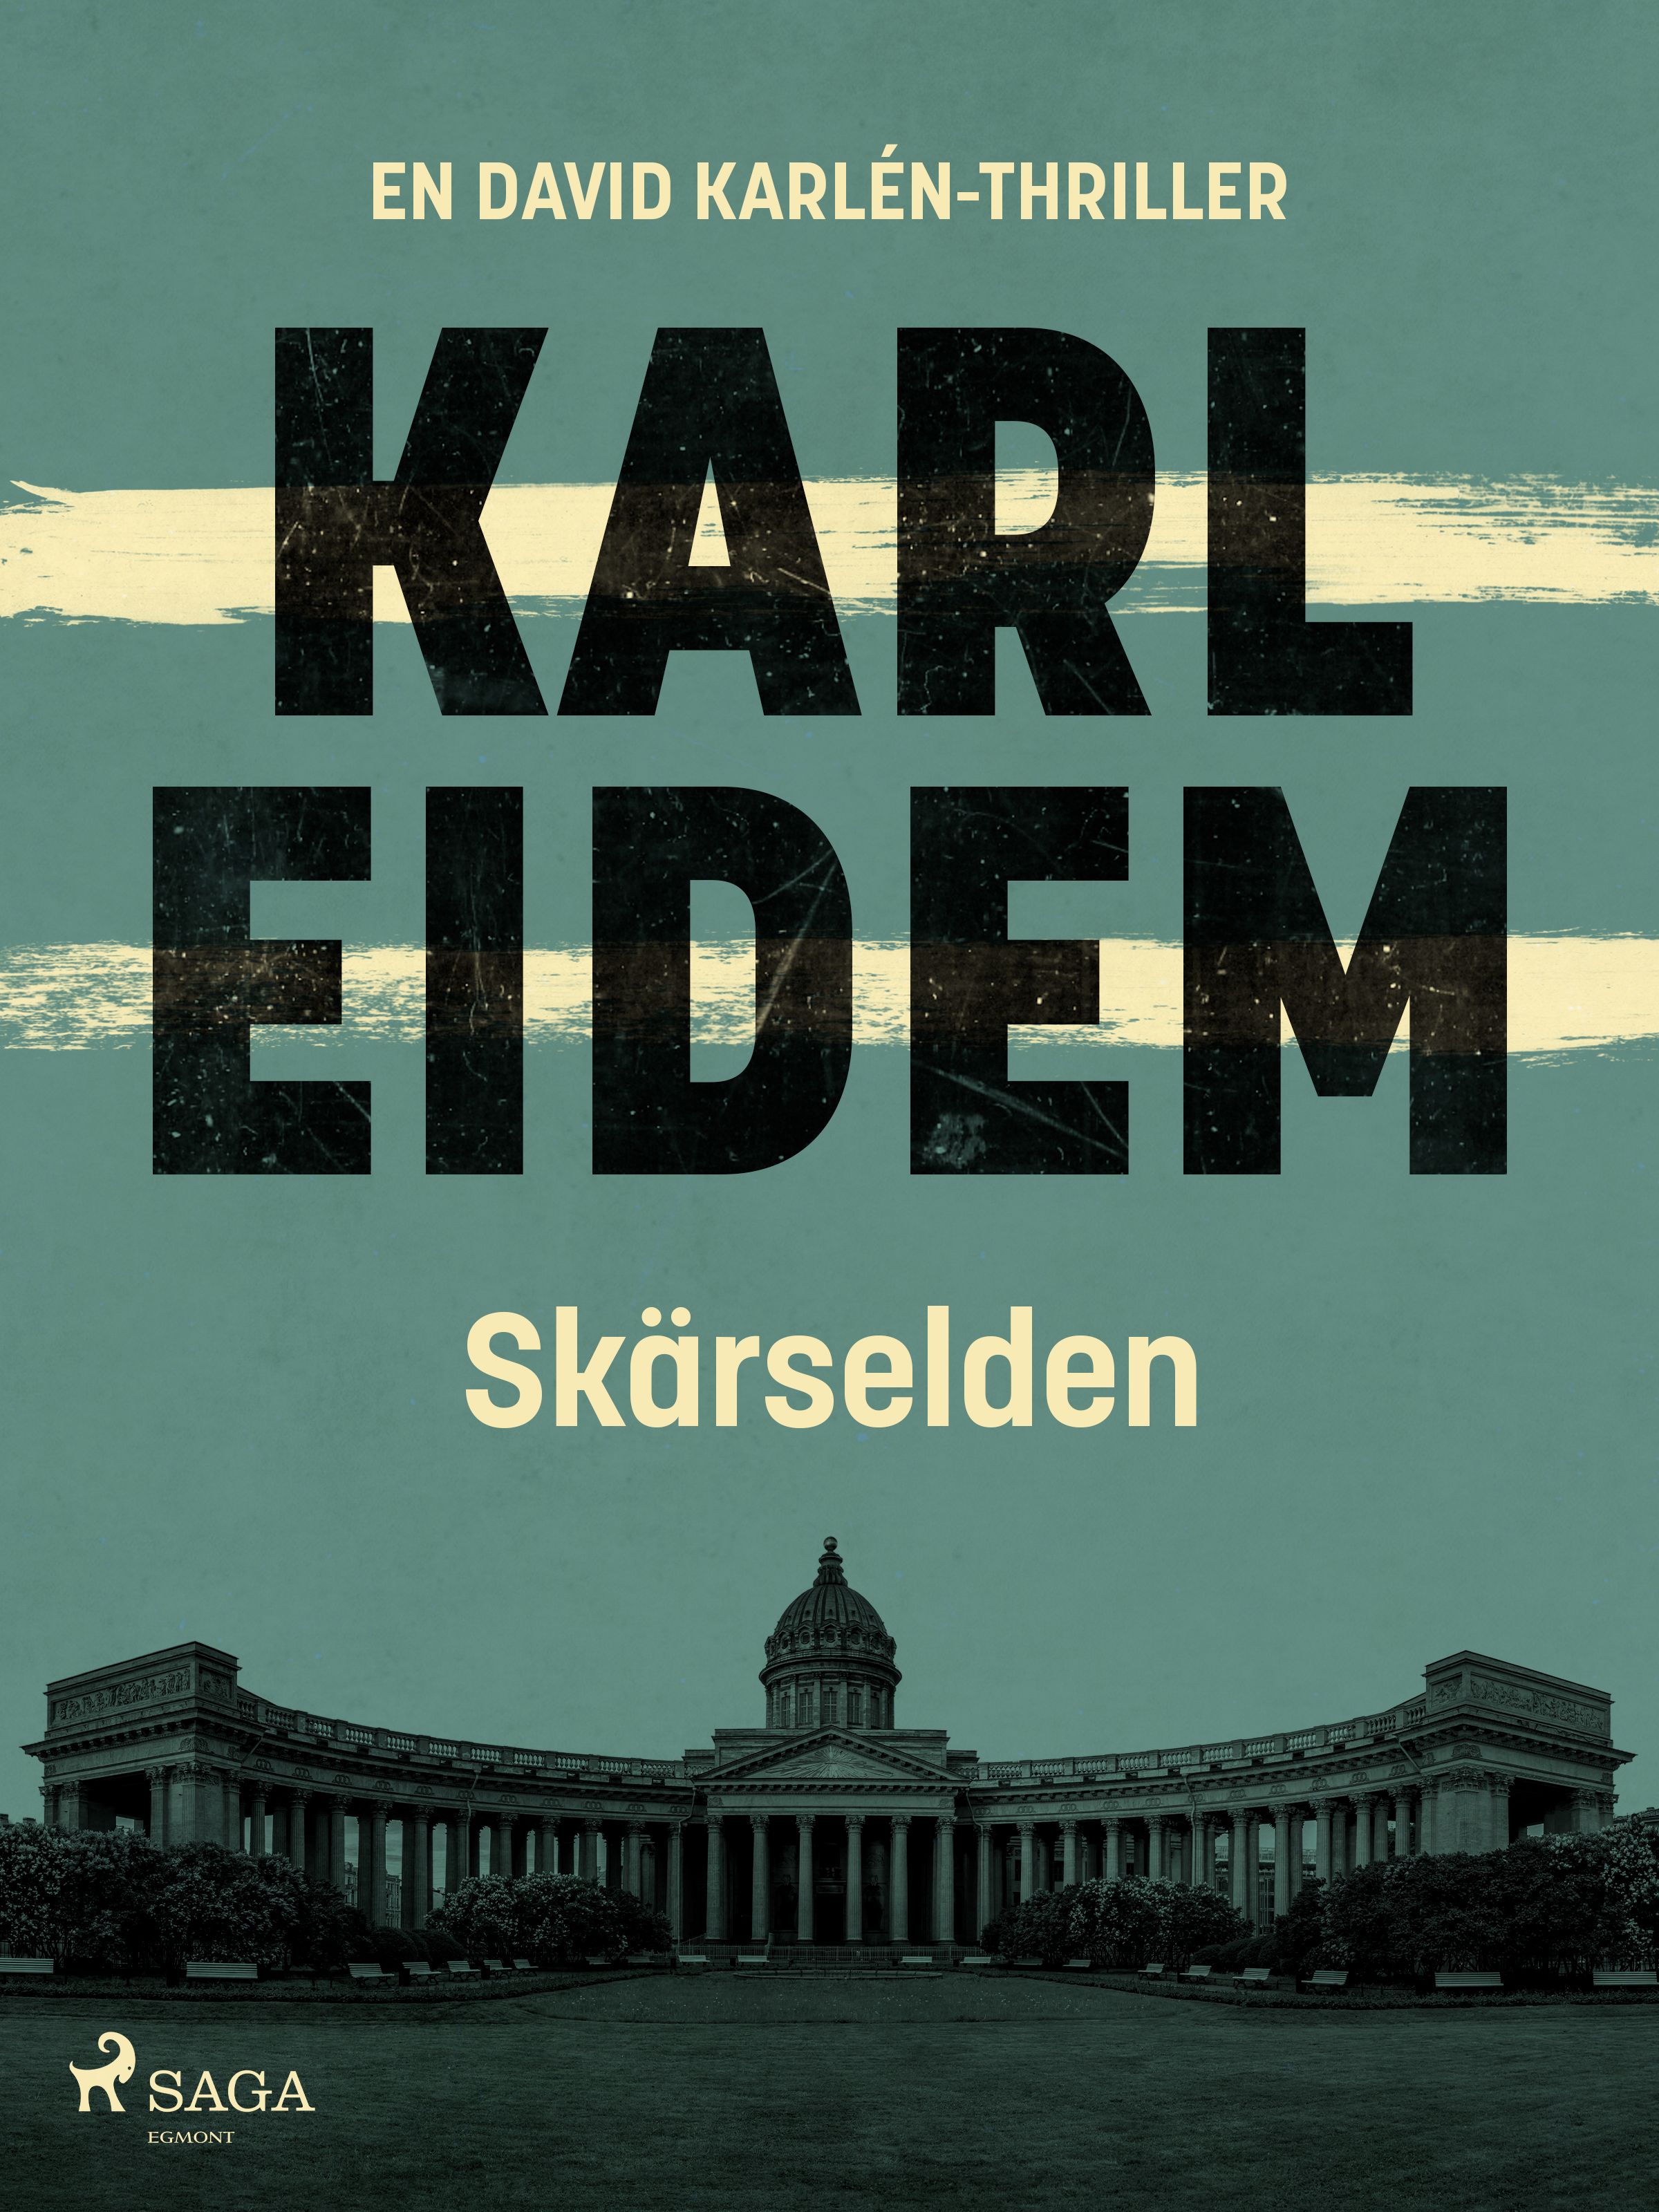 Skärselden, e-bog af Karl Eidem